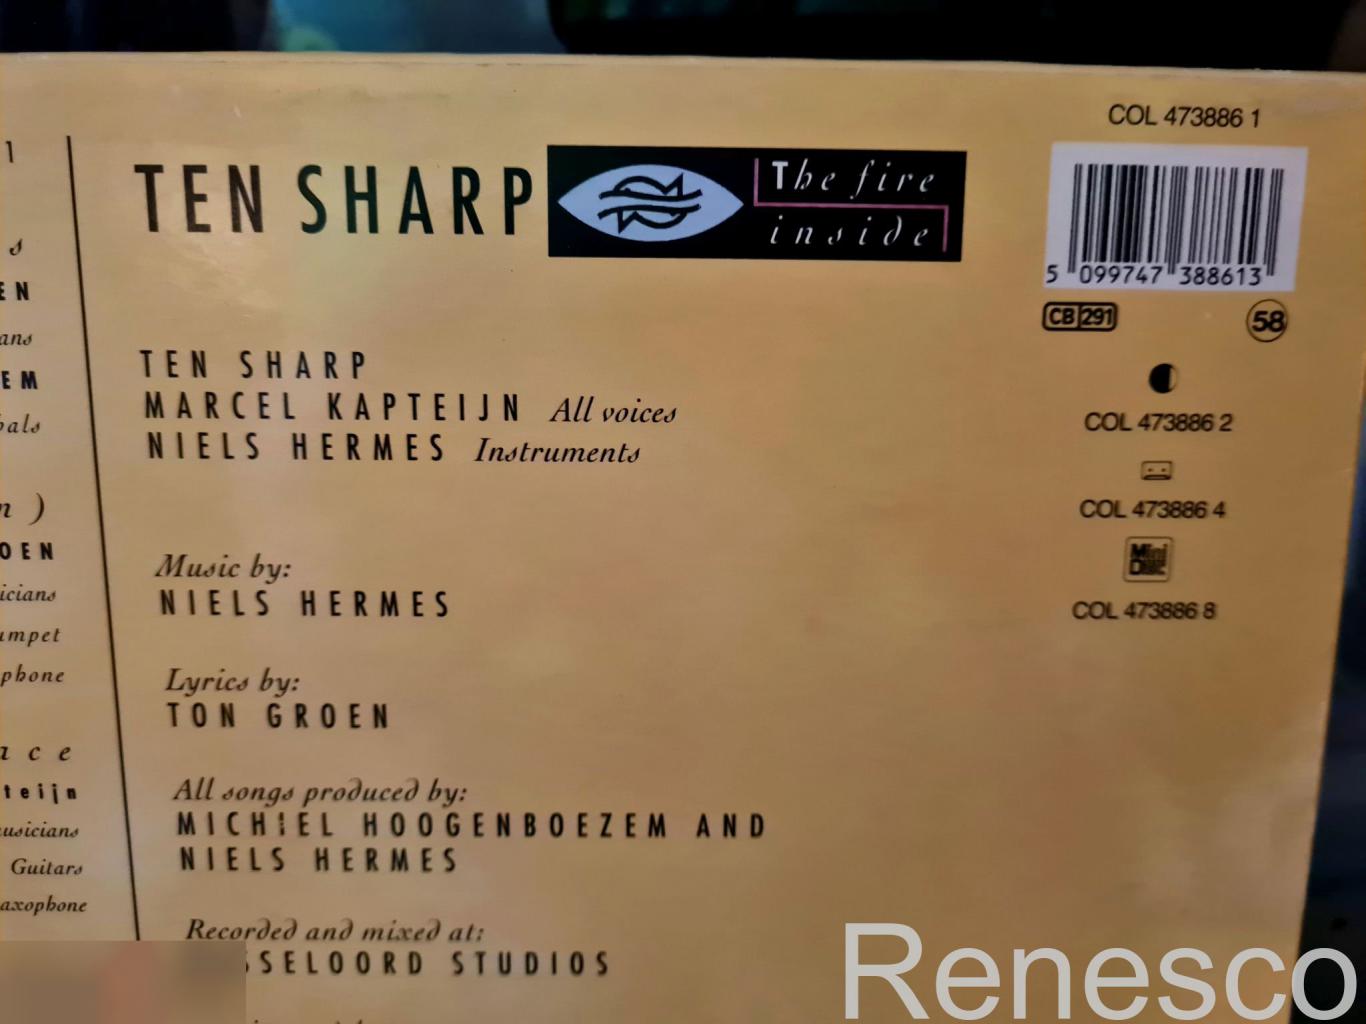 Ten Sharp – The Fire Inside (Netherlands) (1993) 2